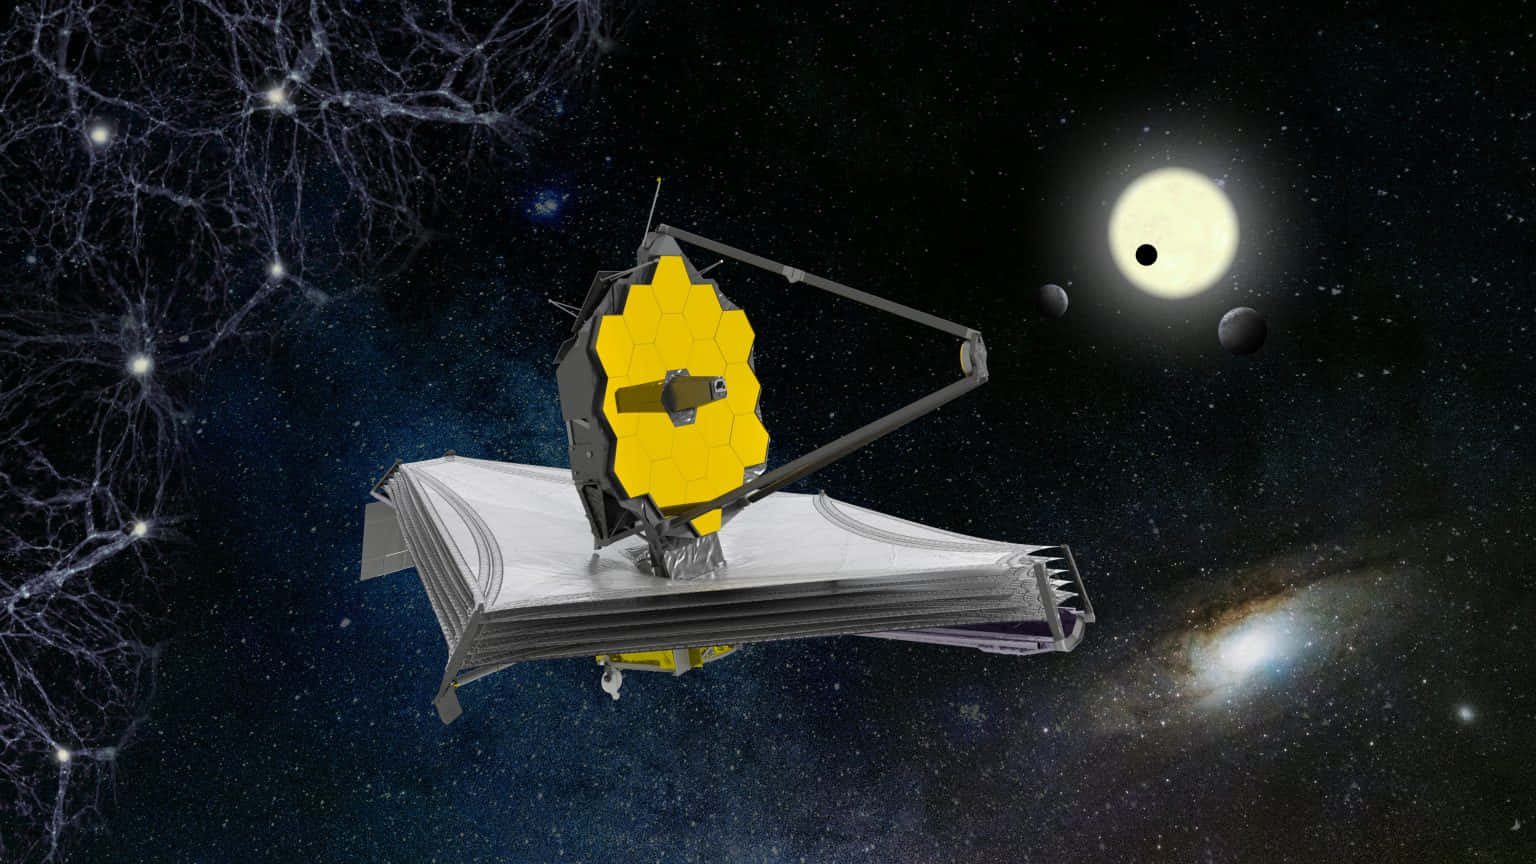 Imagendel Telescopio Astronómico James Webb